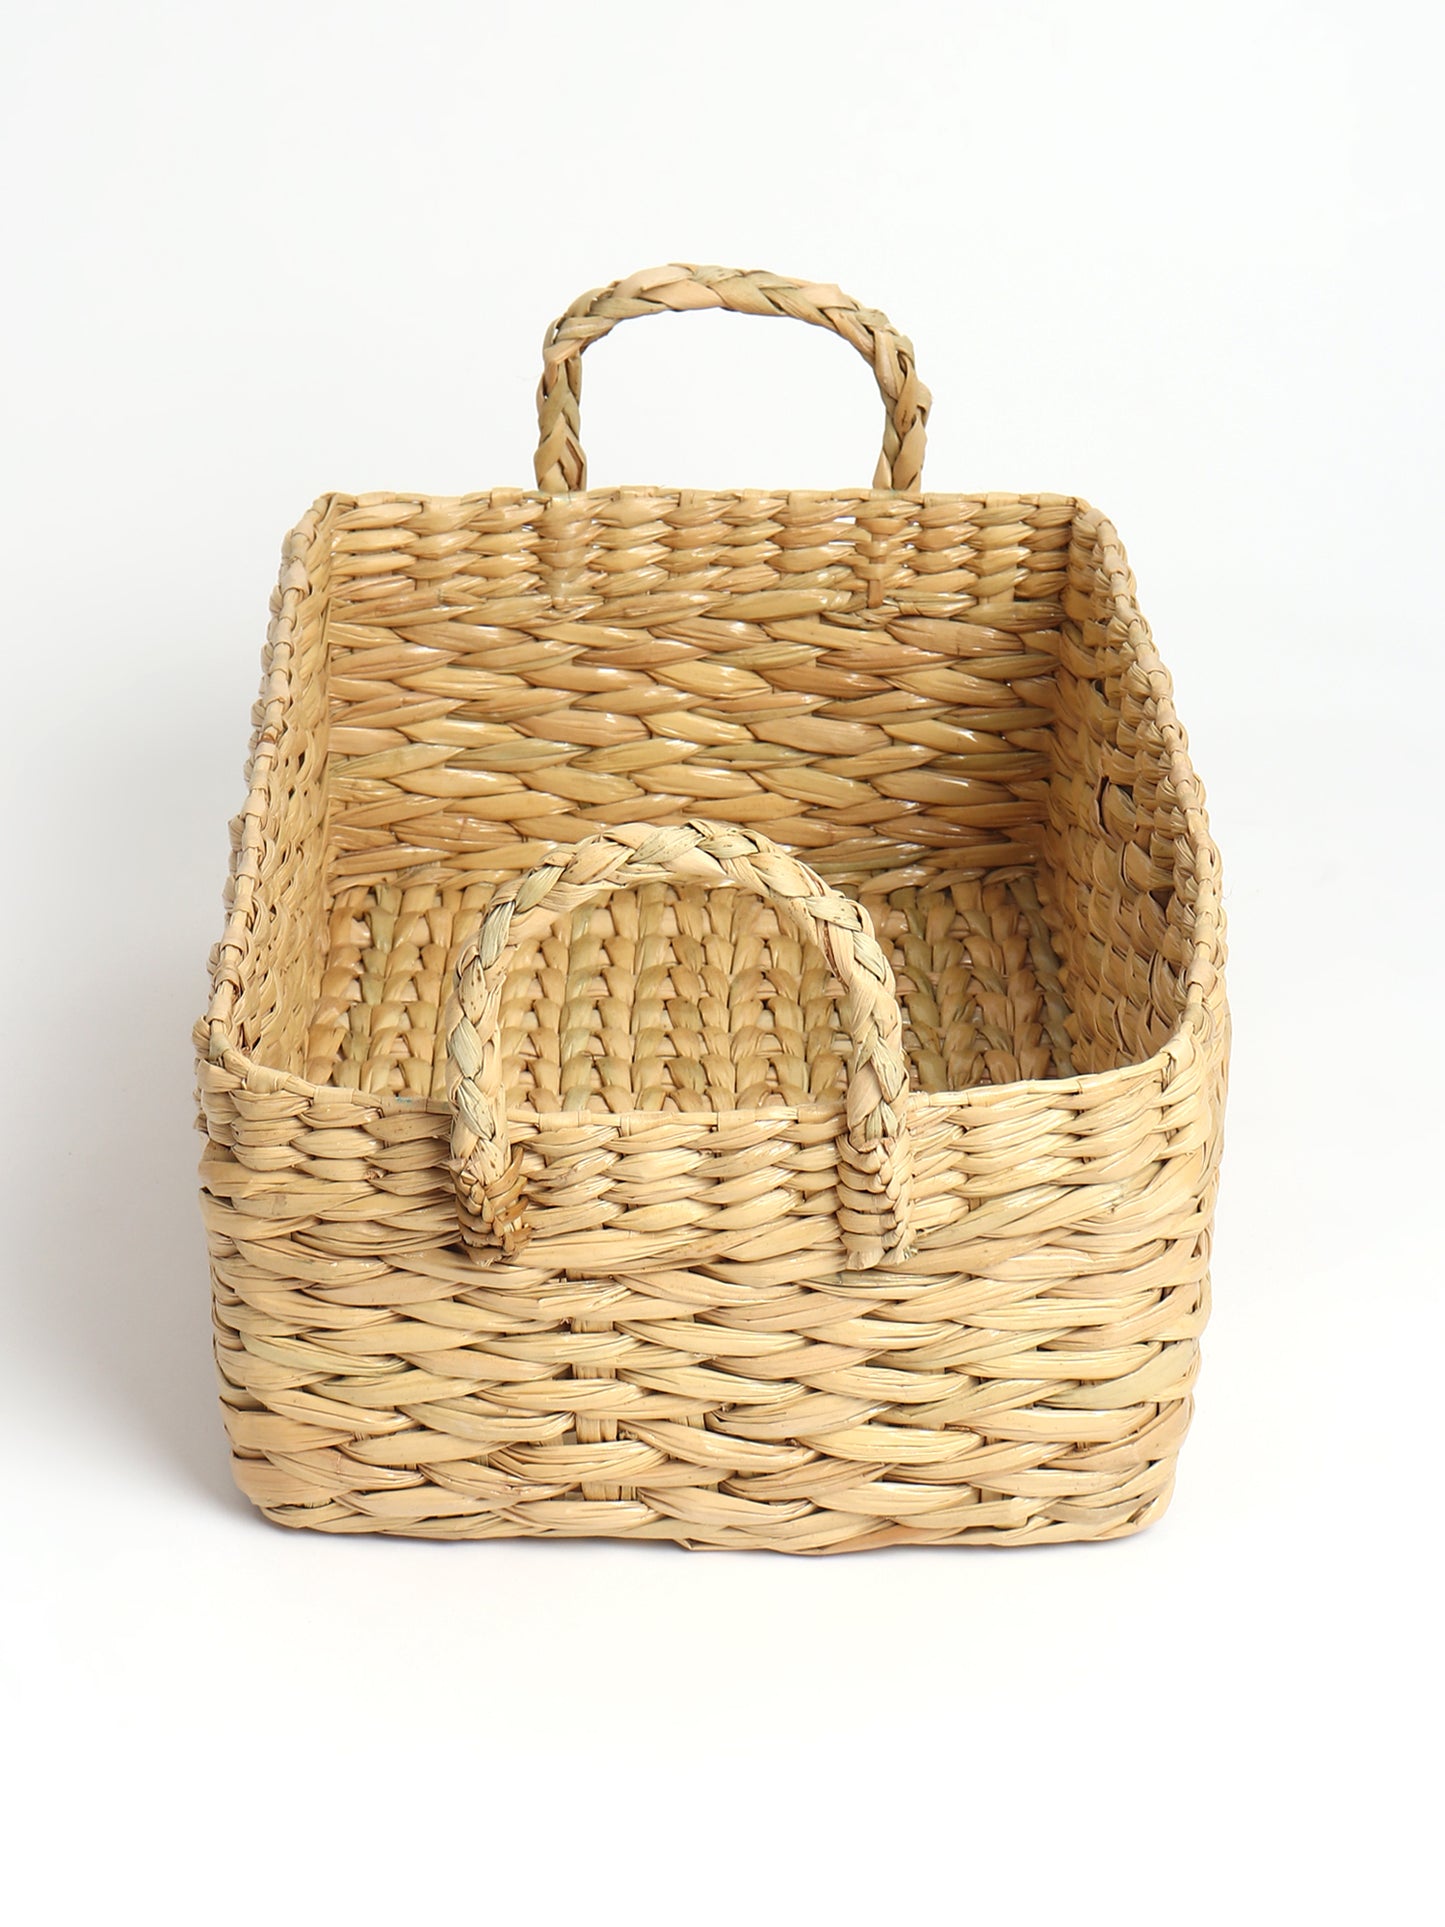 Seagrass Fruit Basket | Gift Hamper Basket